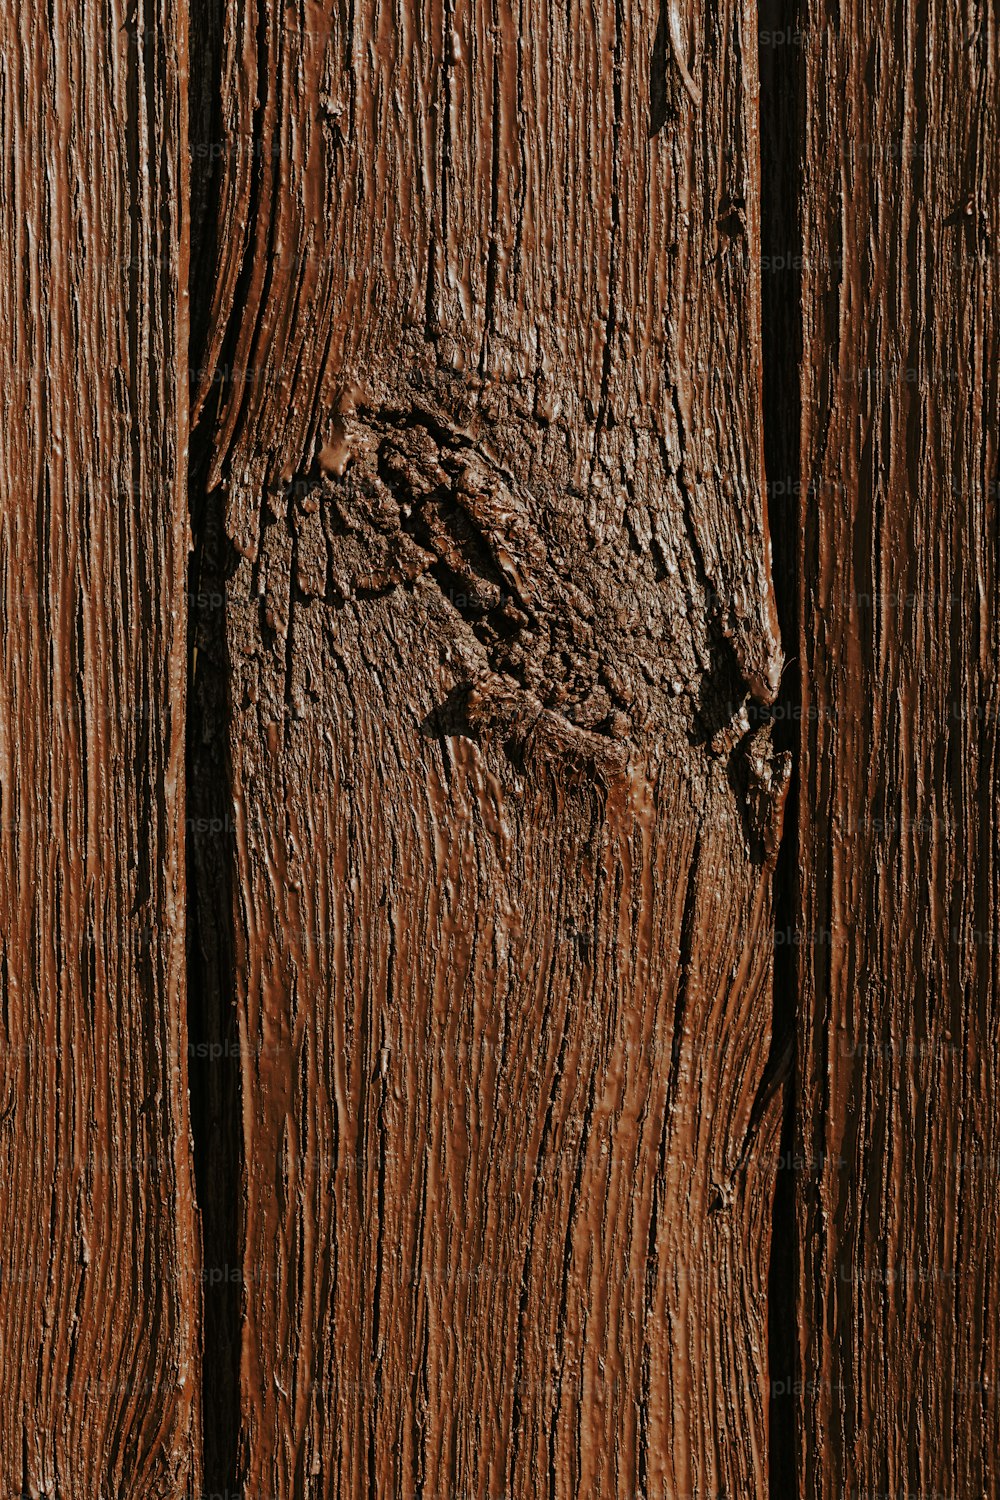 un primer plano de una superficie de madera con pintura descascarada